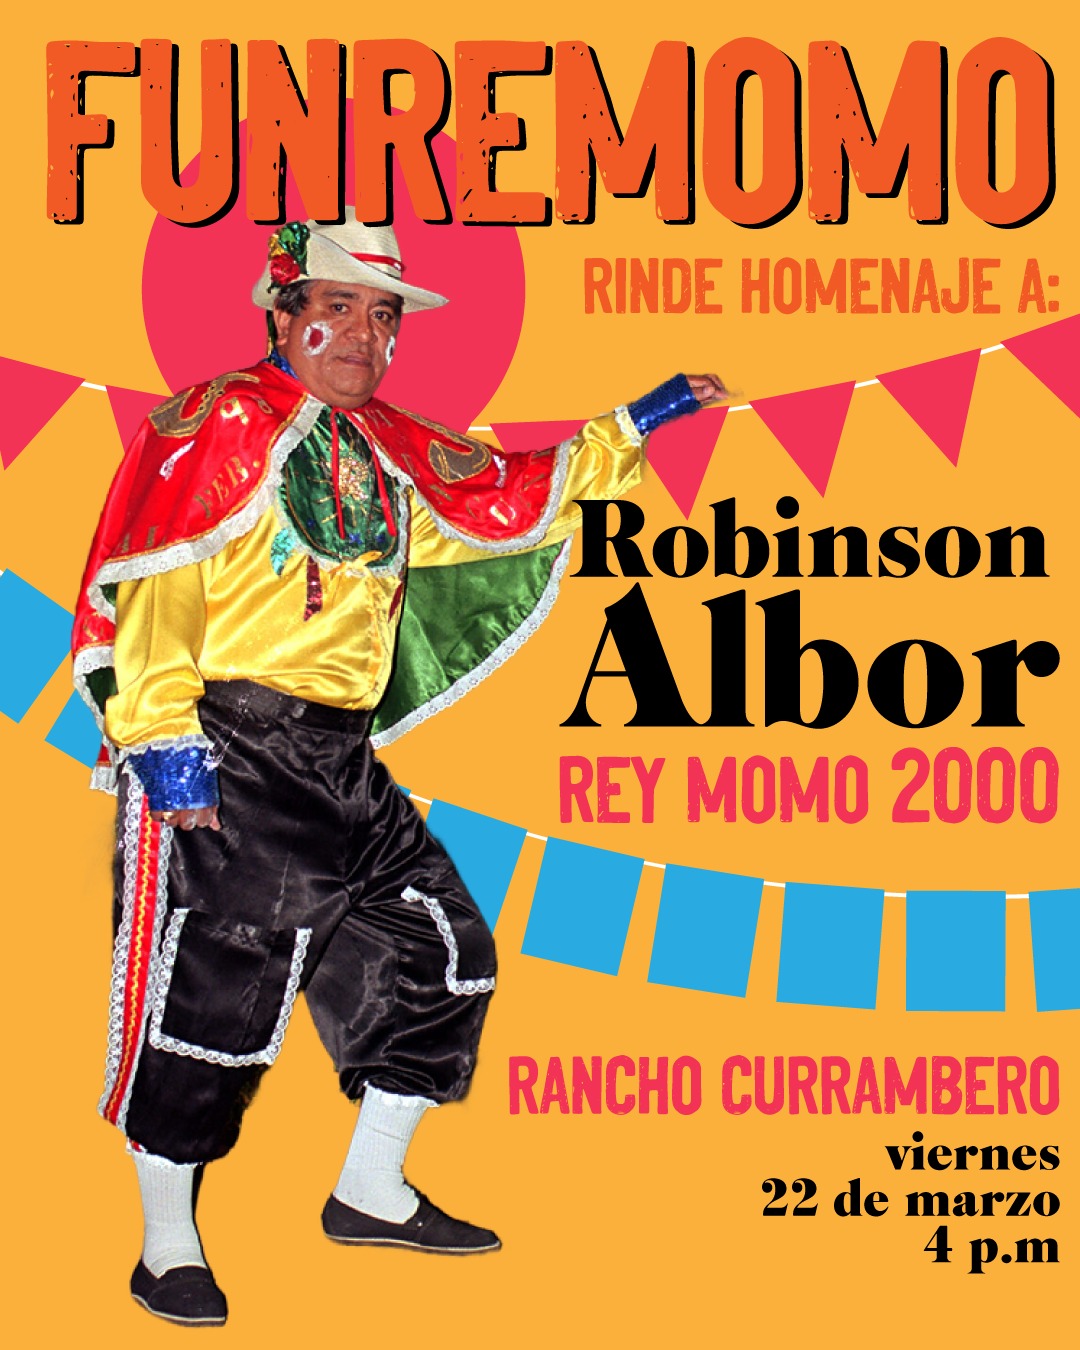 Reyes Momos del Carnaval hacen homenaje a Robinson Albor en su Rancho Currambero